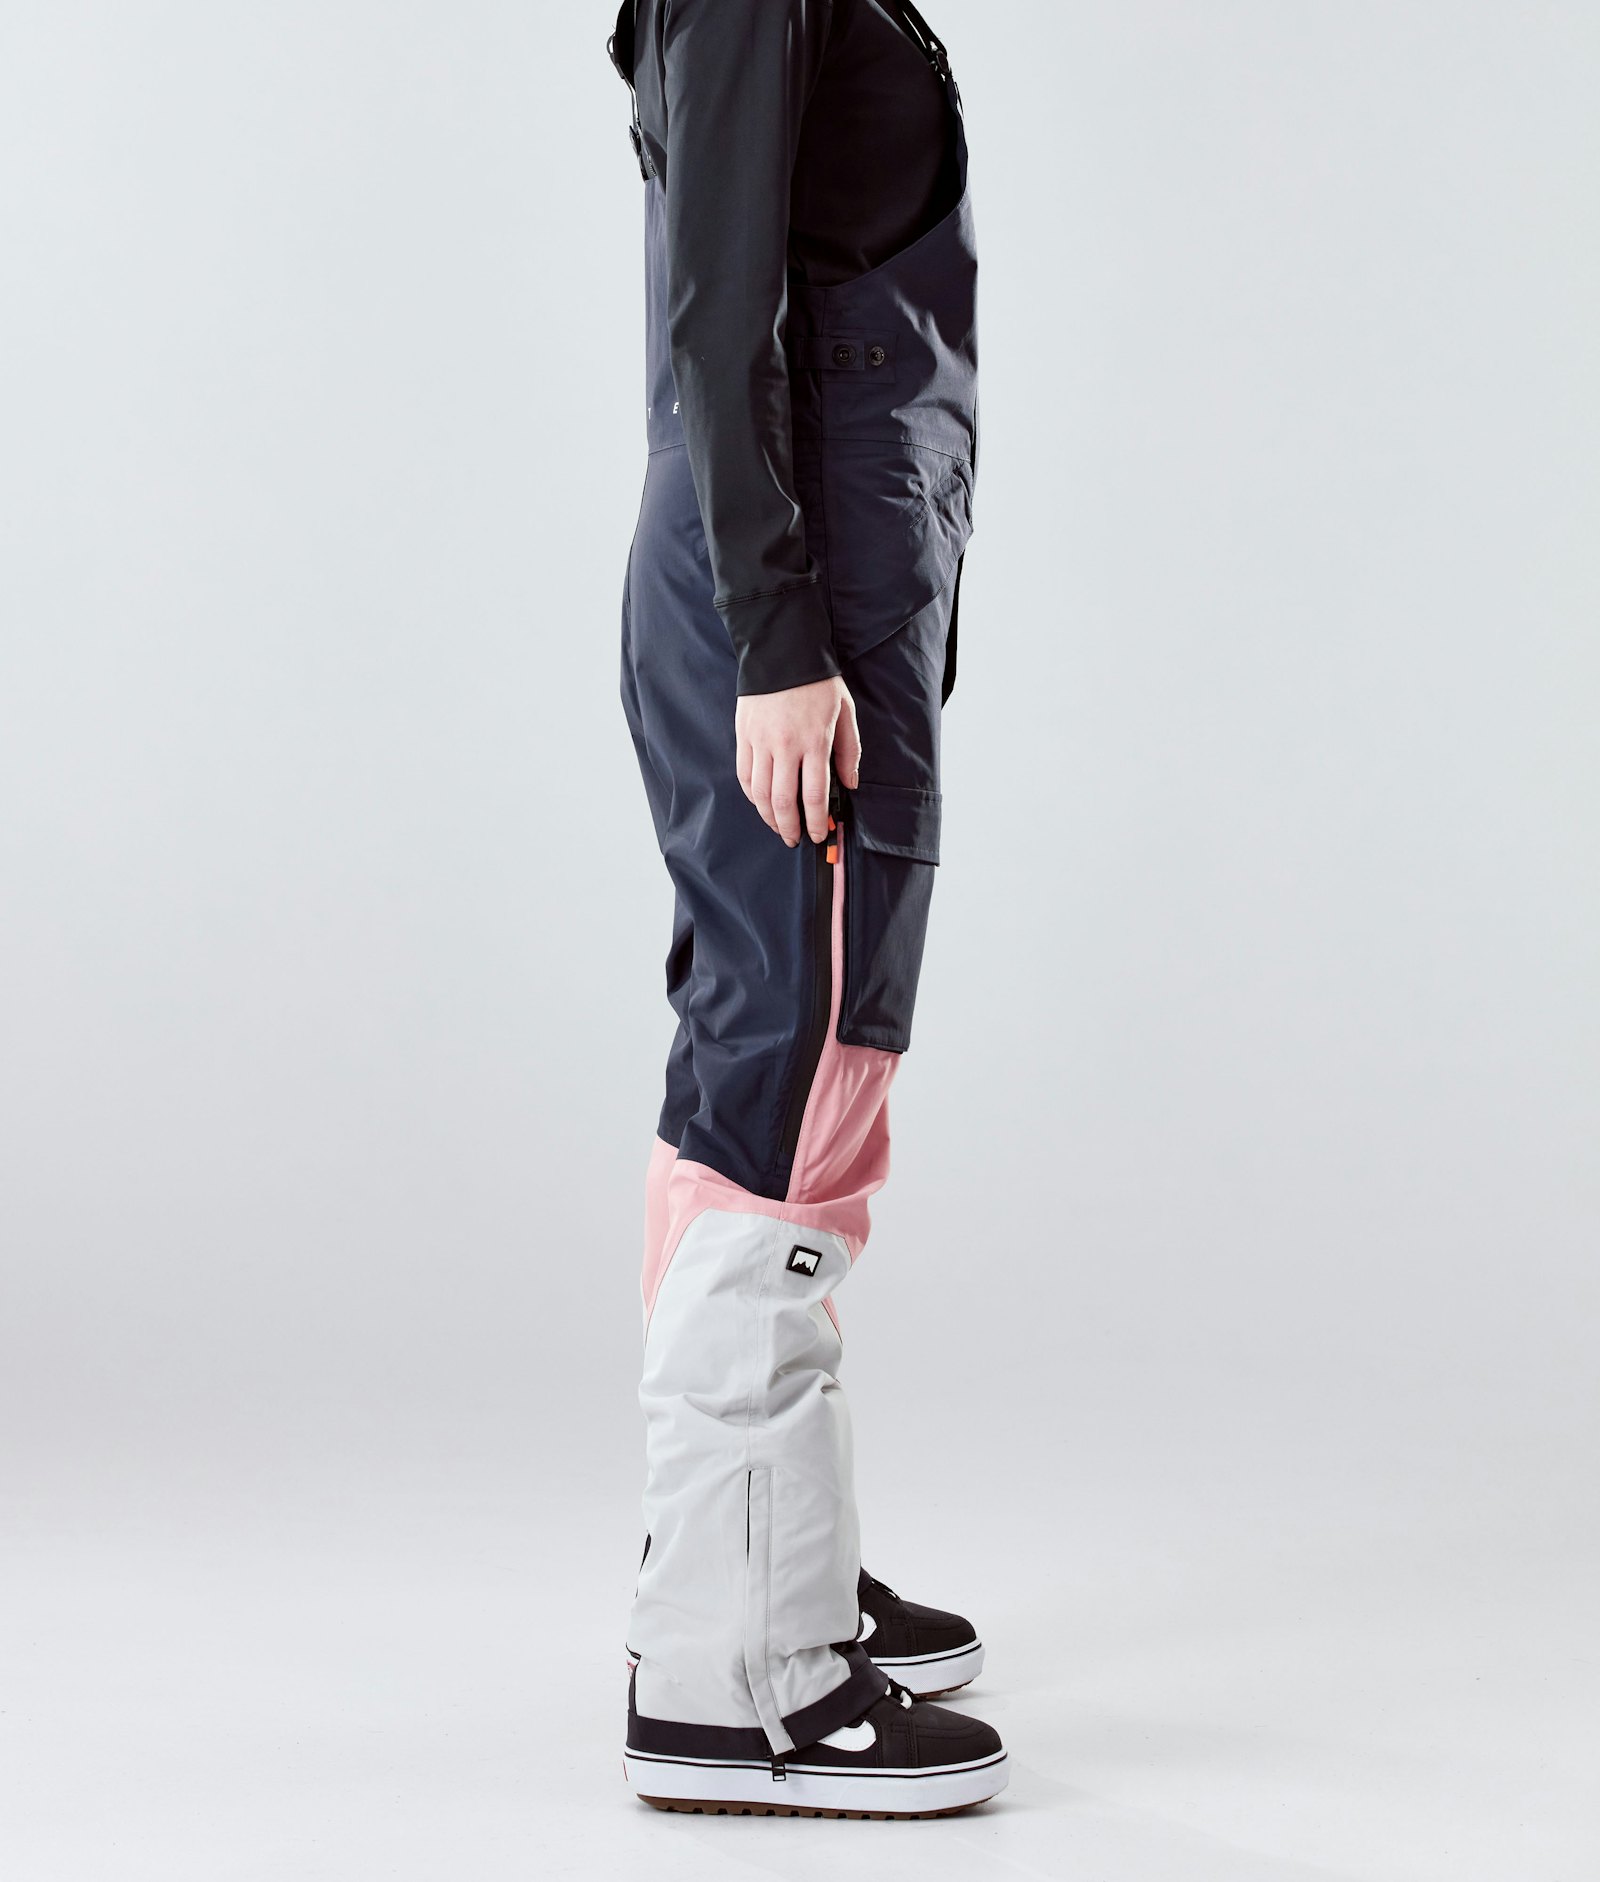 Fawk W 2020 Spodnie Snowboardowe Kobiety Marine/Pink/Light Grey